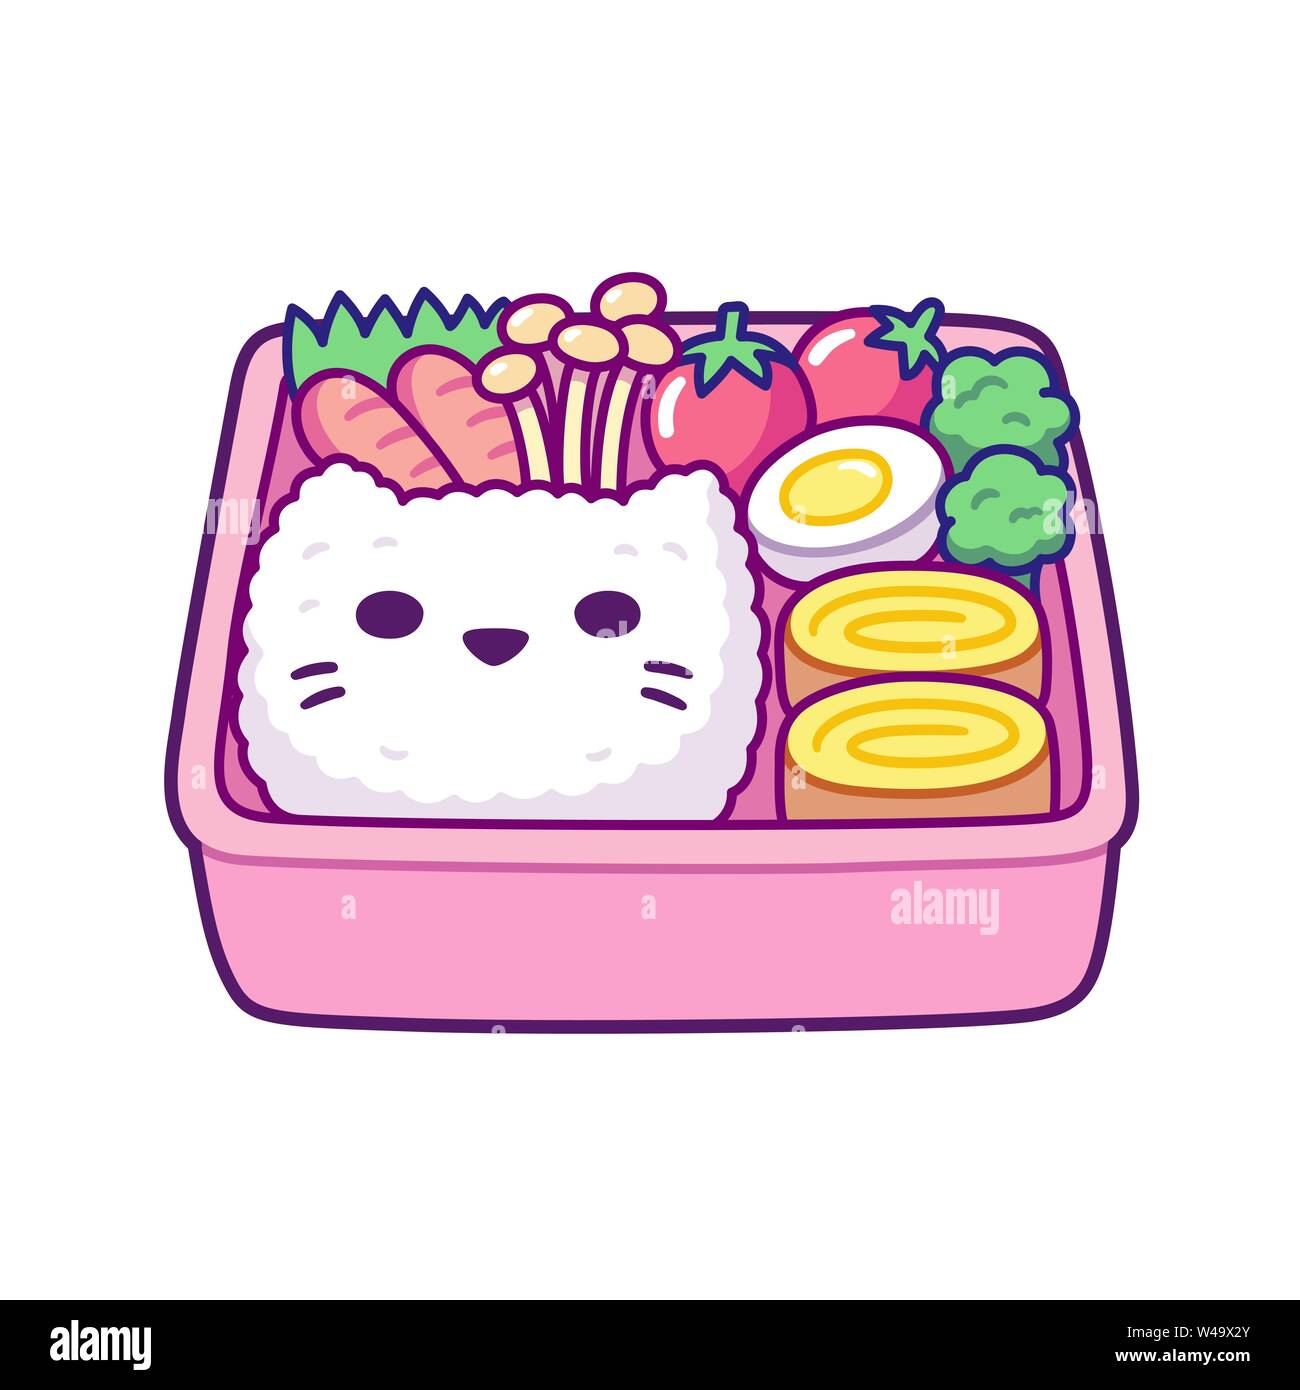 Cartoon carino bento box con faccia di gatto riso a forma di uovo, rotoli, funghi e ortaggi. Tradizionale lunchbox giapponese per i bambini. Semplice disegnati a mano vecto Illustrazione Vettoriale